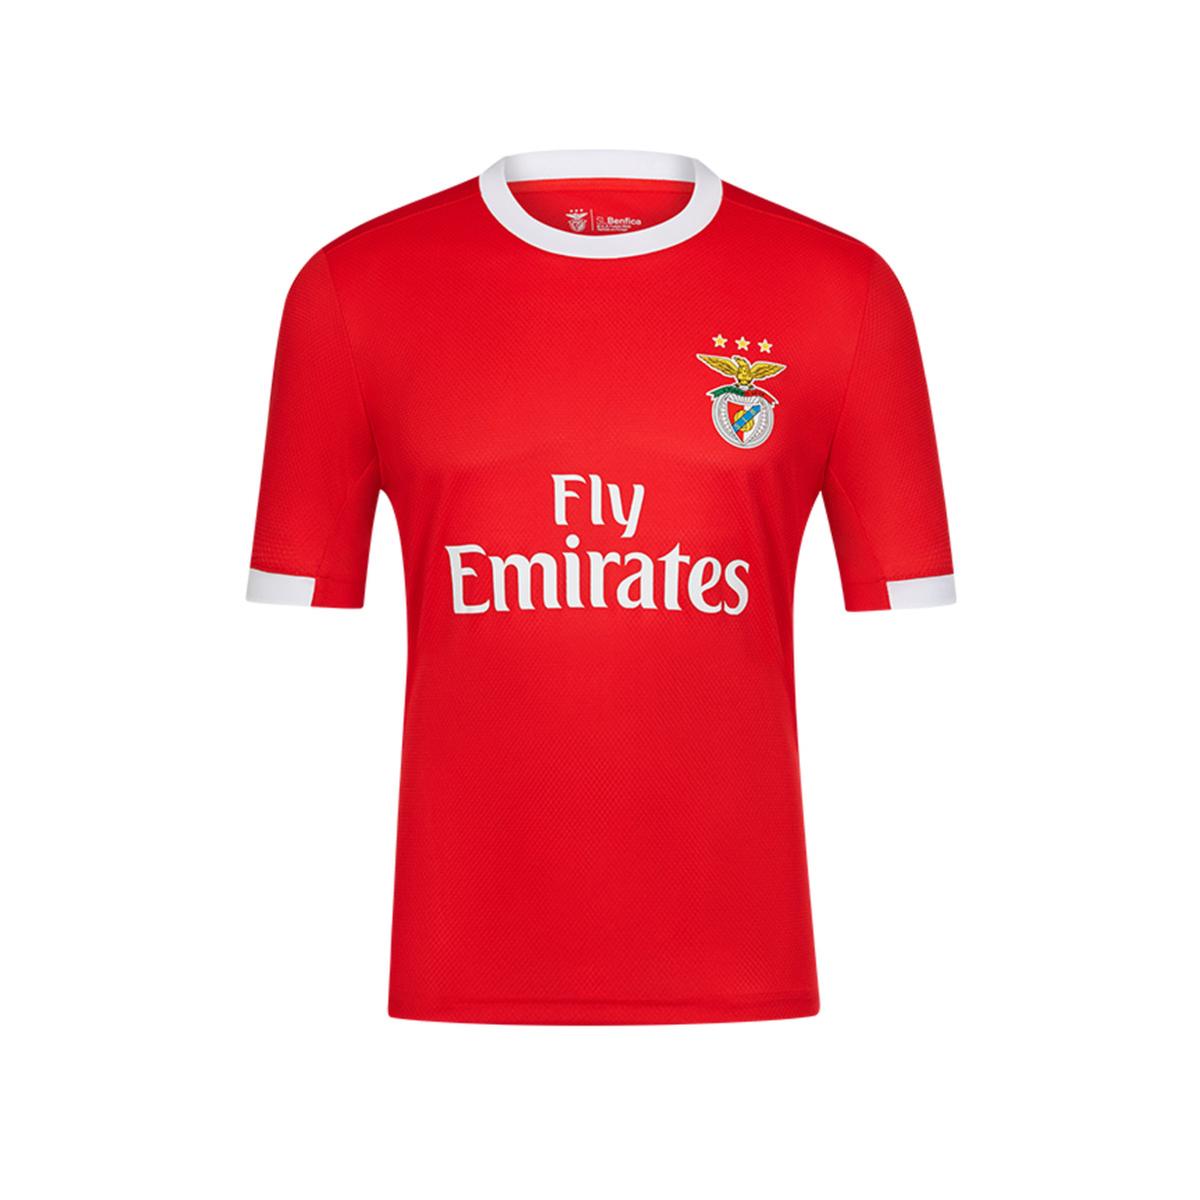 Benfica - Camisola Principal Temporada 2019/20 2-3 anos | FAN FUTEBOL |  Loja de brinquedos e videojogos Online Toysrus